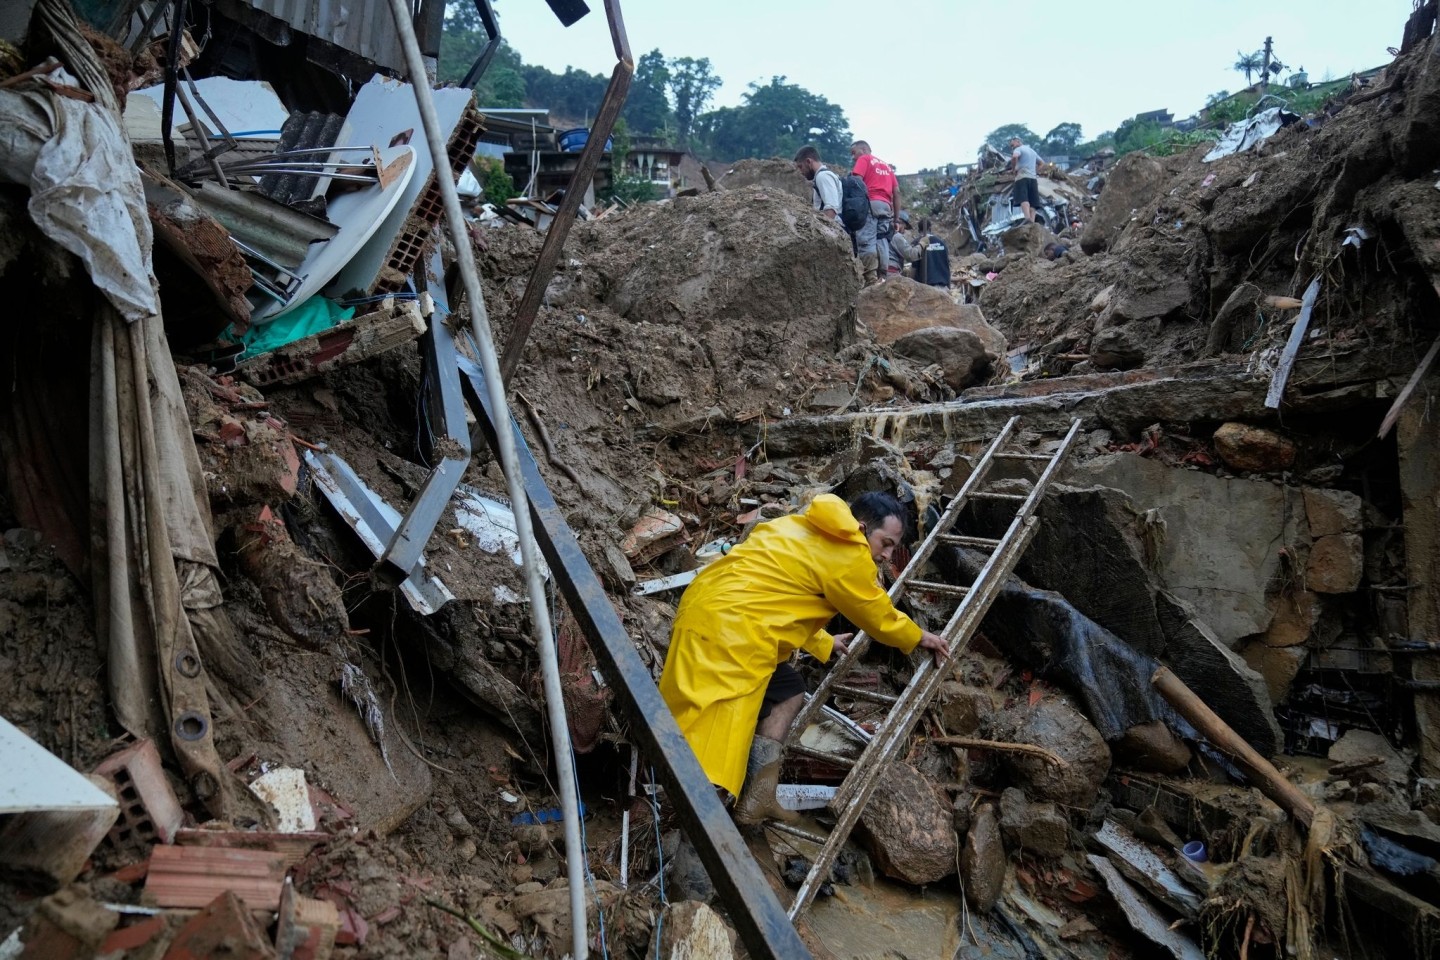 Rettungskräfte und Anwohner suchen nach Opfern in einem von Erdrutschen betroffenen Gebiet in Petrópolis.